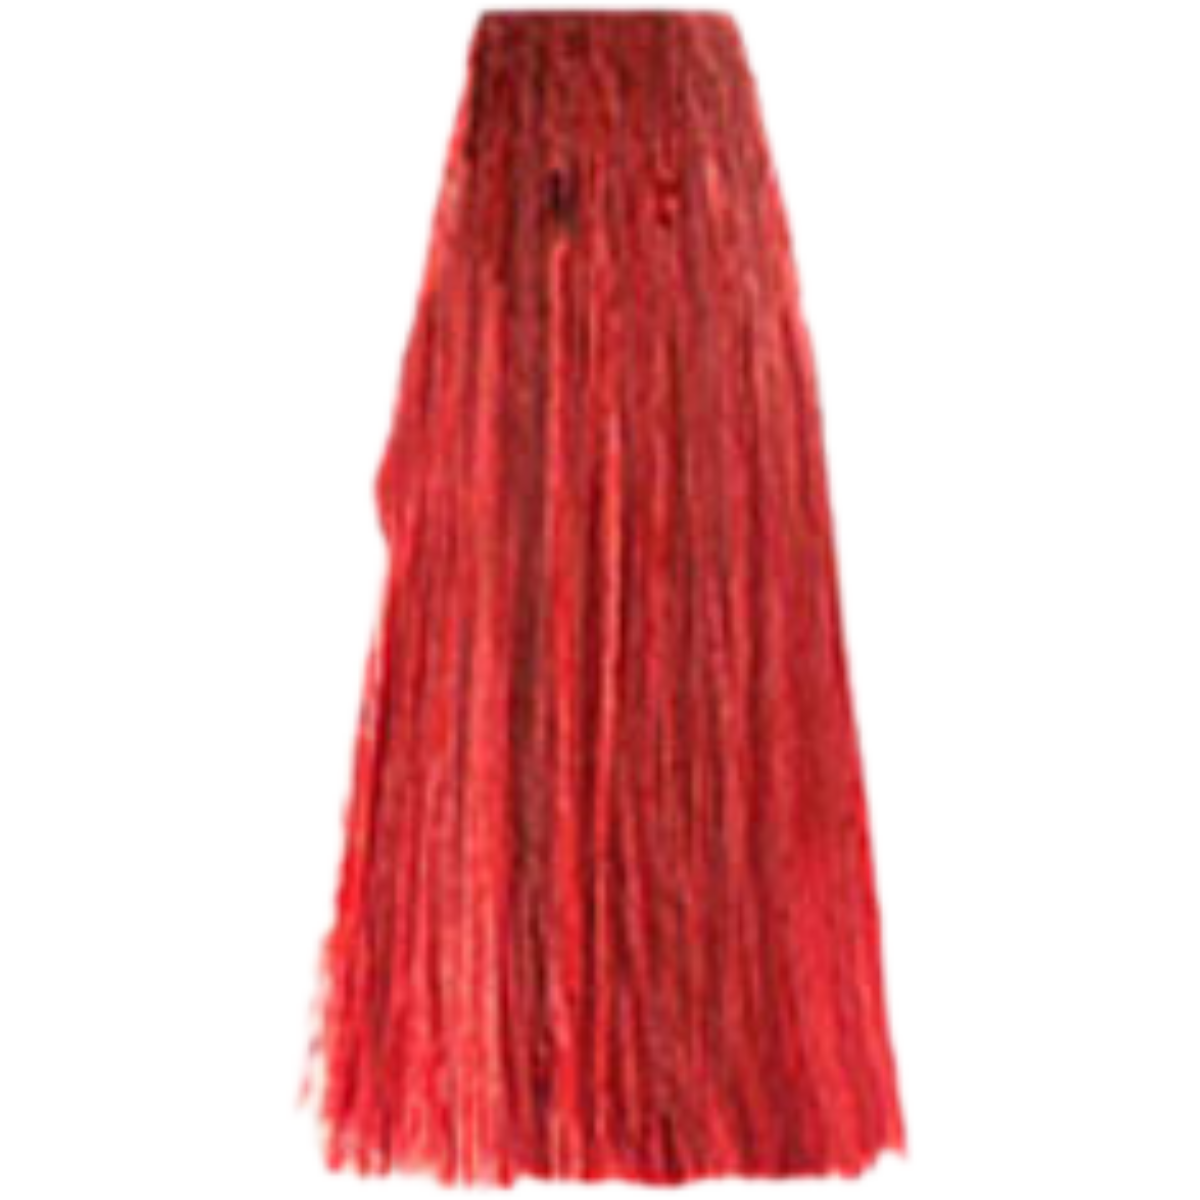 צבע שיער 8.66 LIGHT INTENSE RED BLONDE פארמויטה FarmaVita צבע לשיער 100גרם